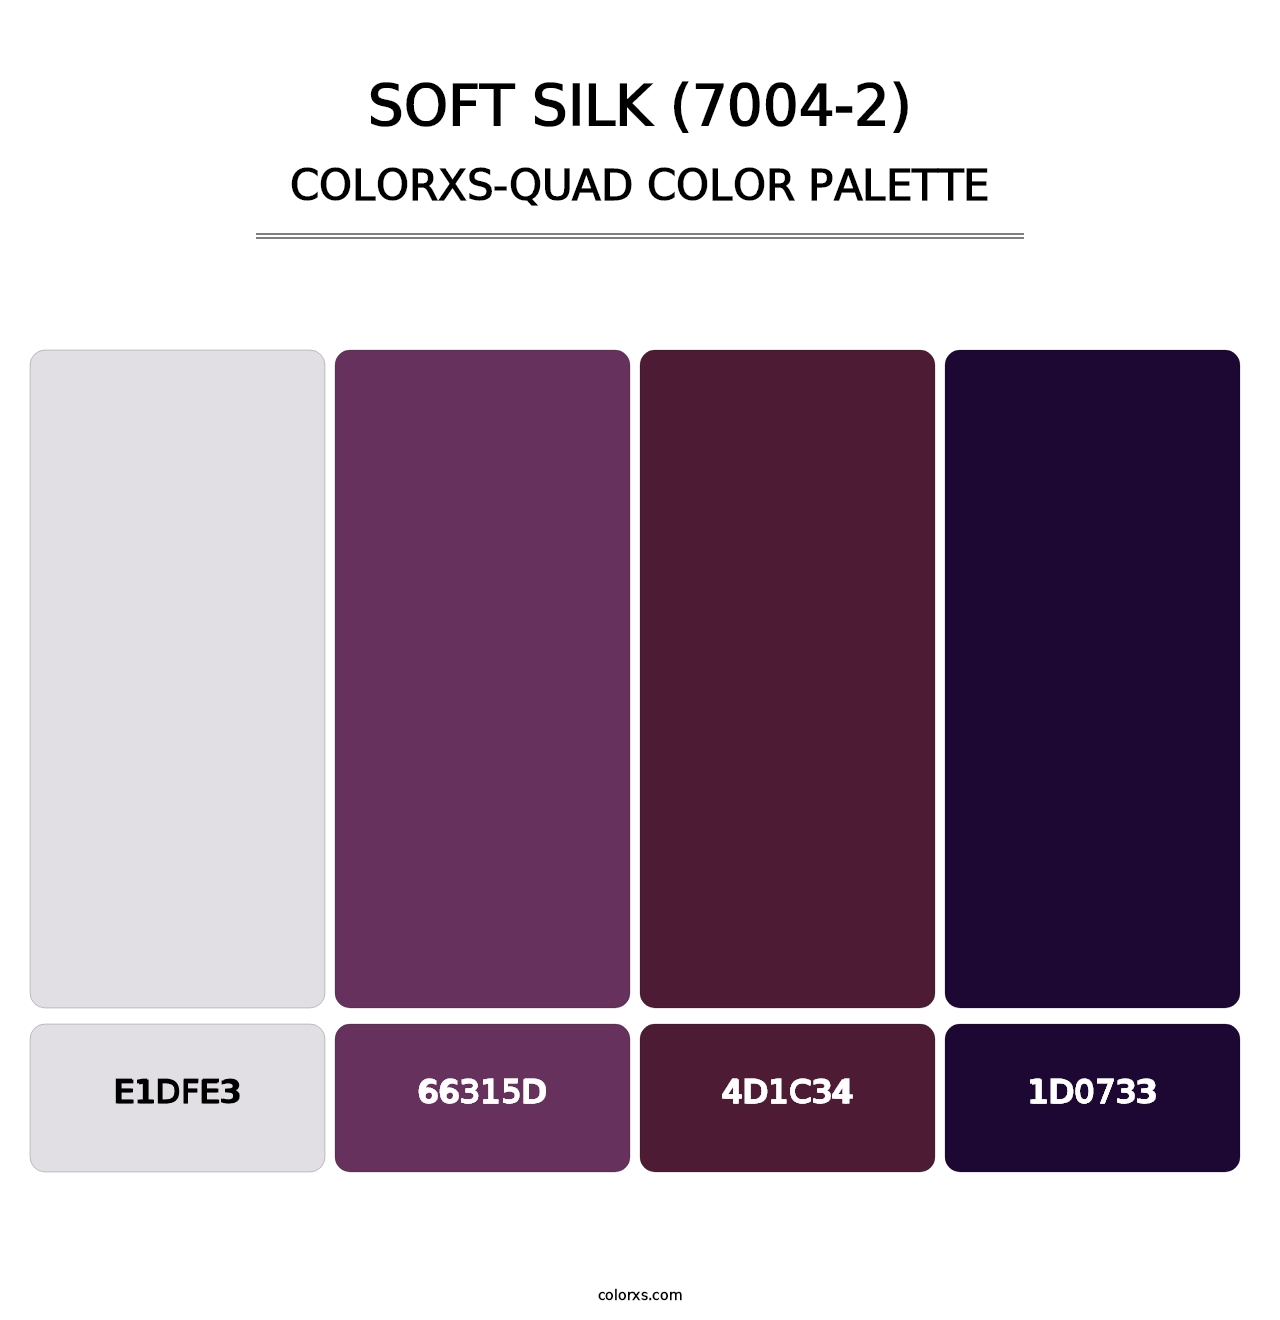 Soft Silk (7004-2) - Colorxs Quad Palette